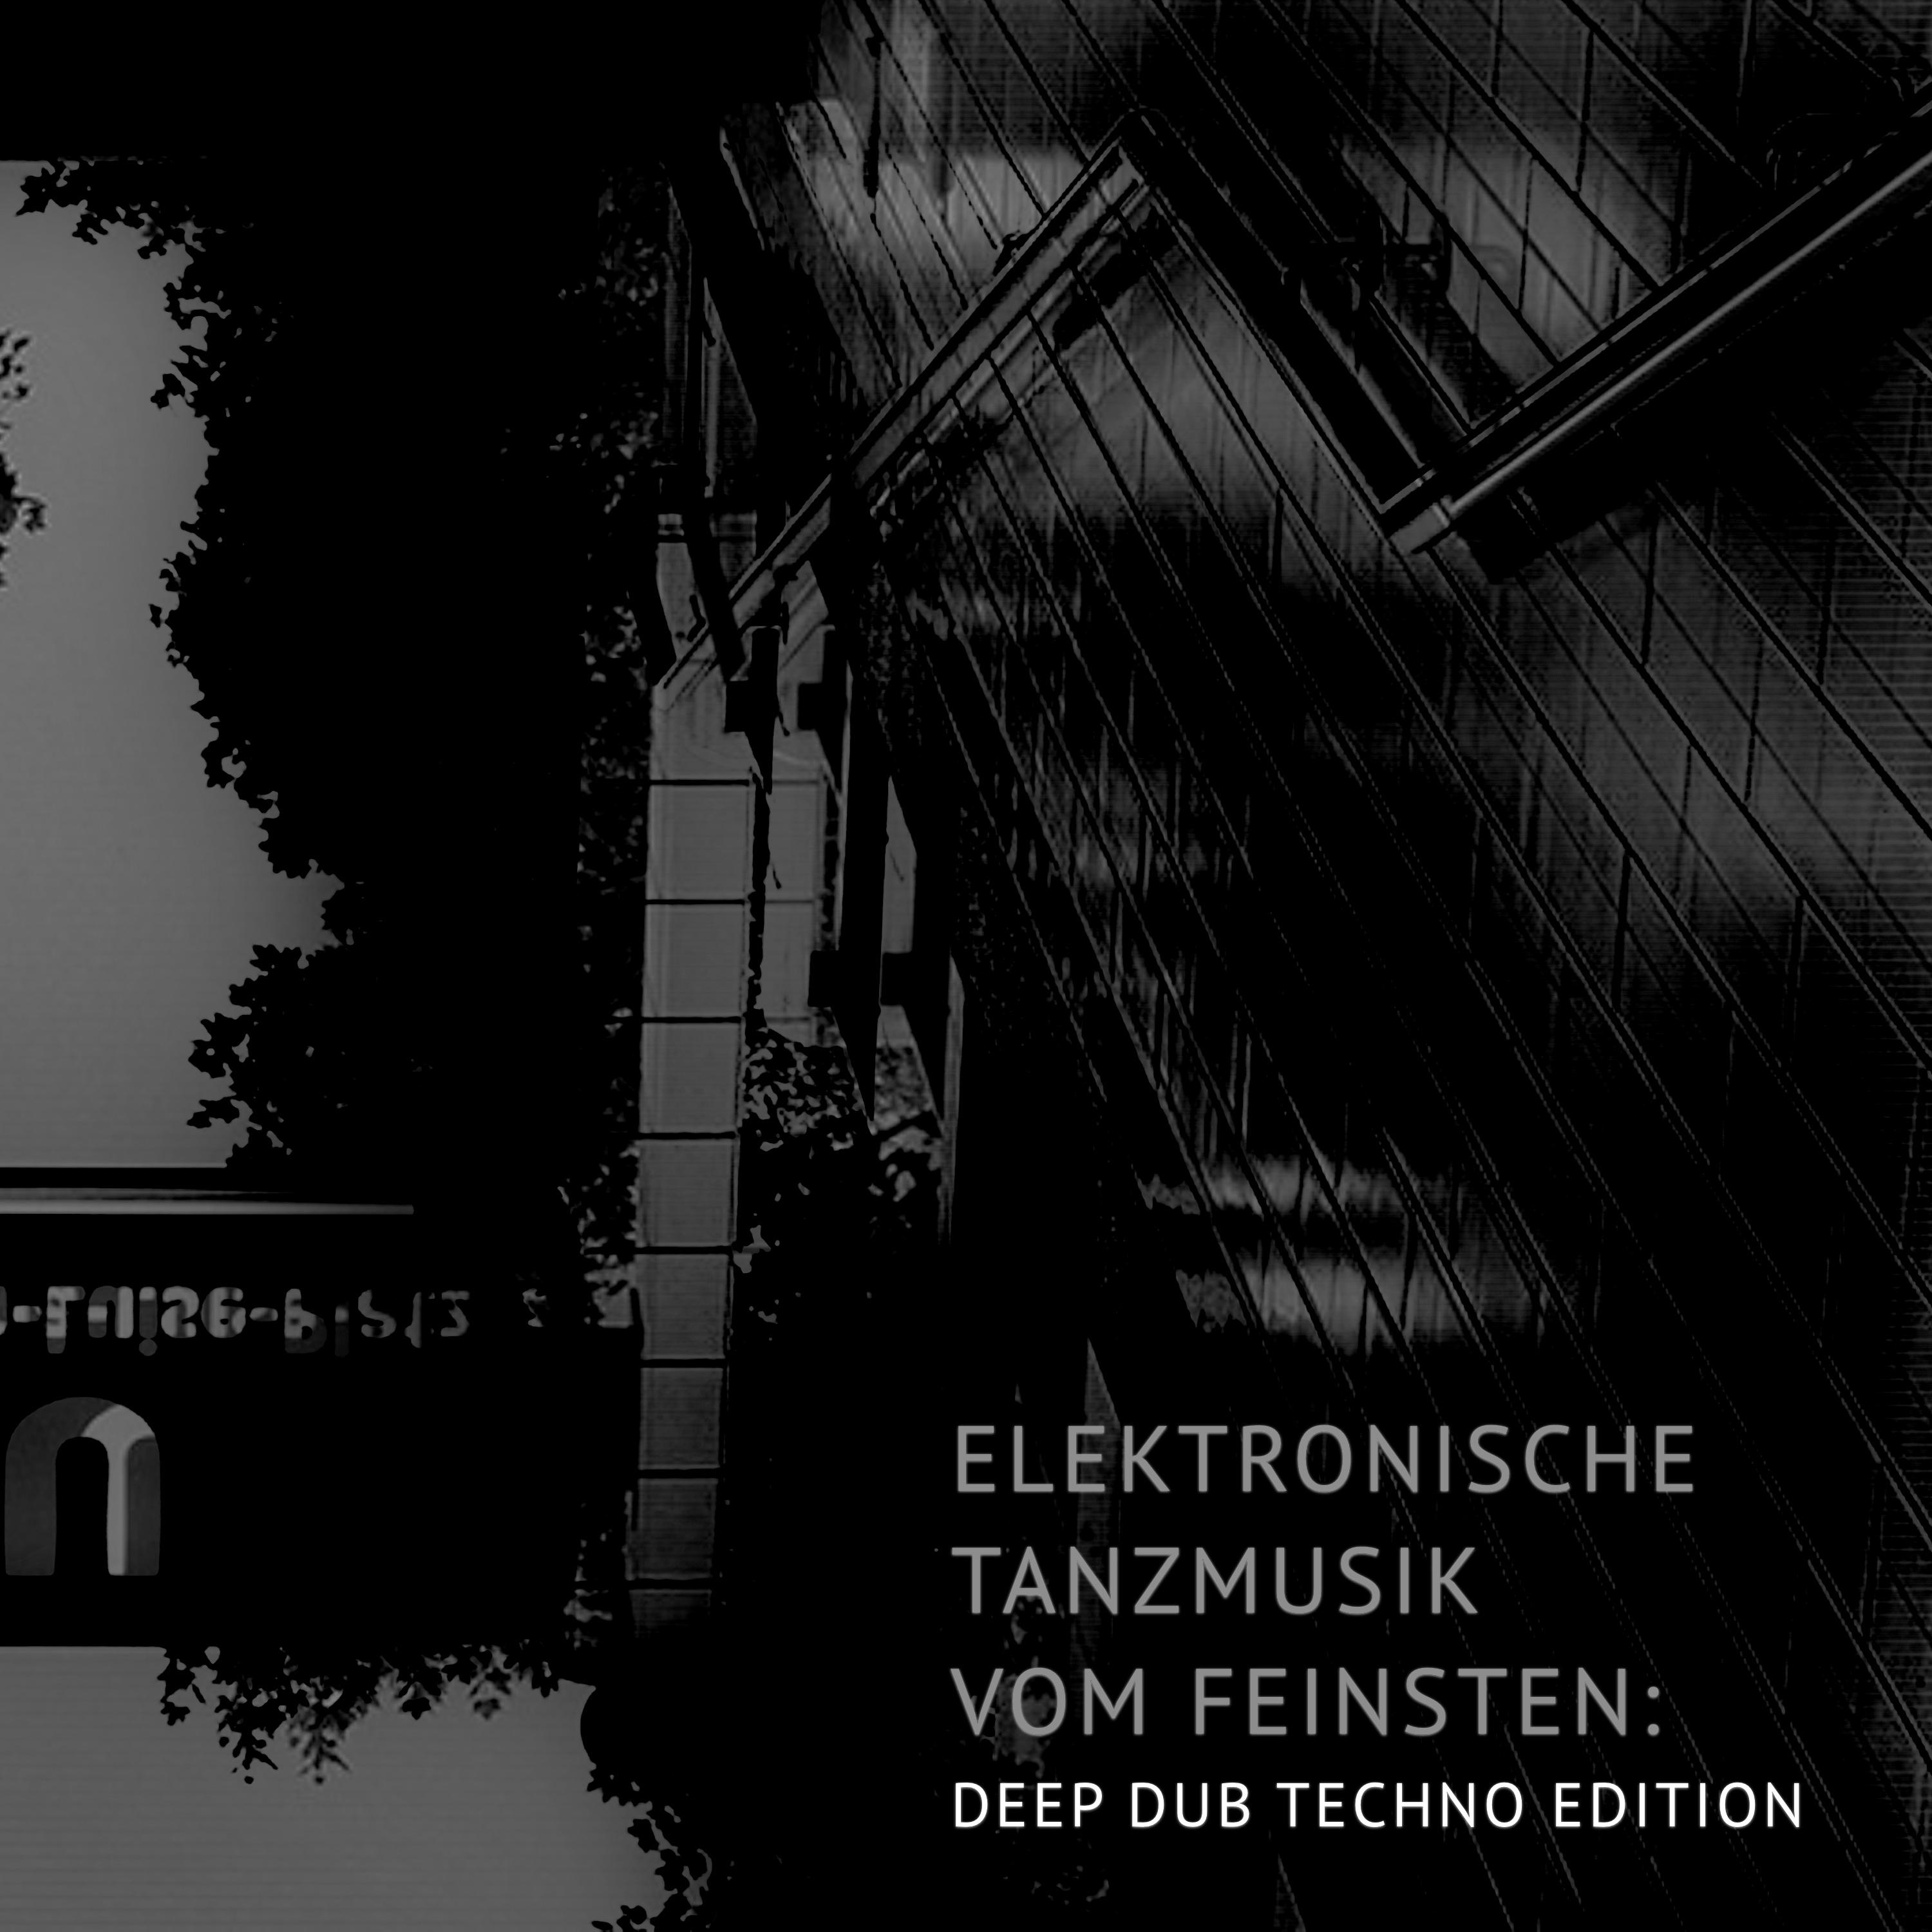 Elektronische Tanzmusik vom feinsten: Deep Dub Techno Edition